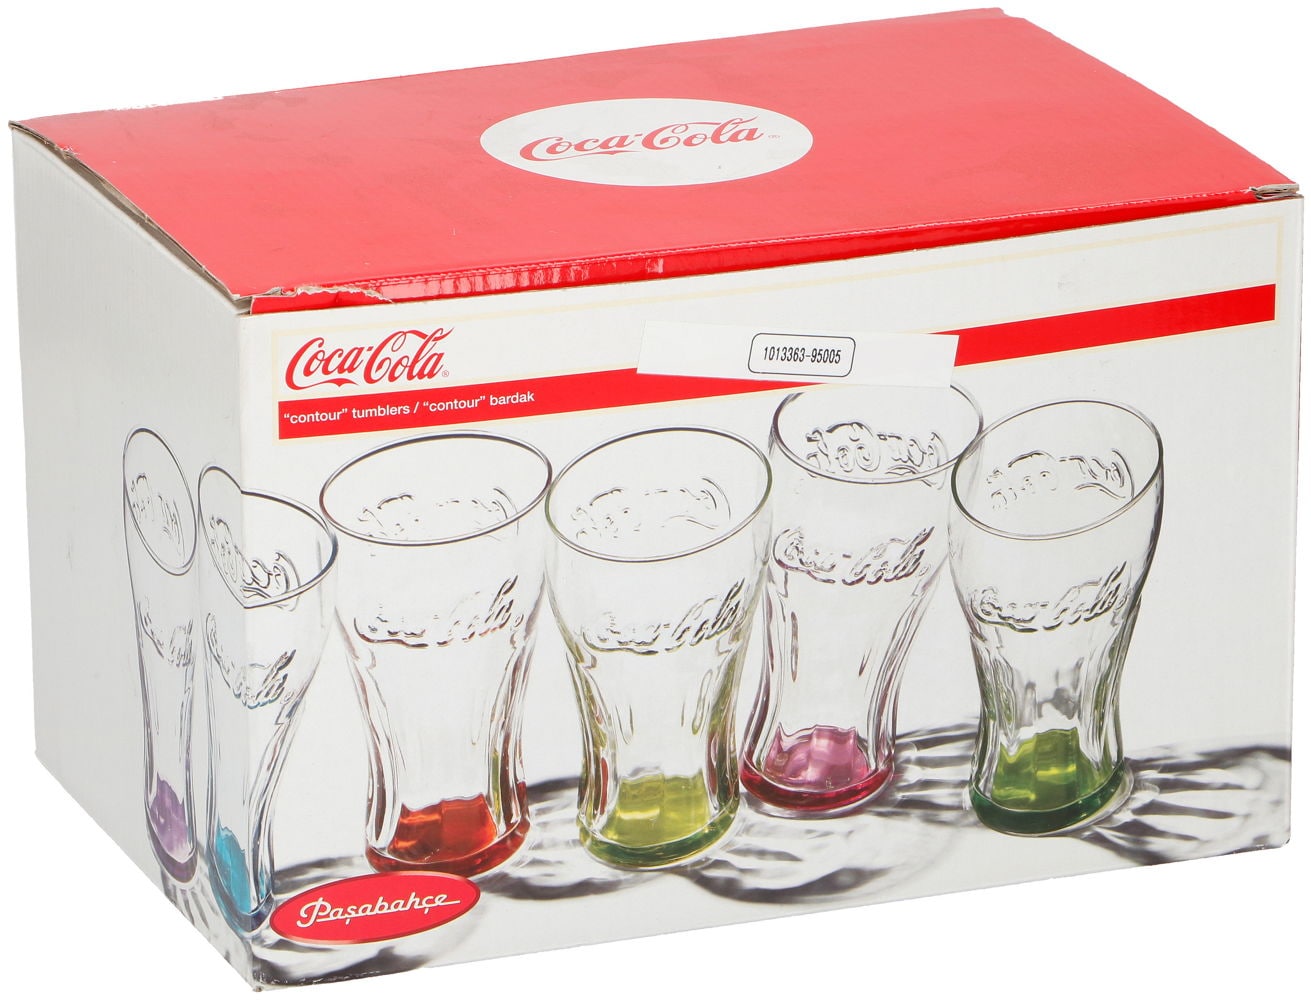 Coca cola glass 6-Pk